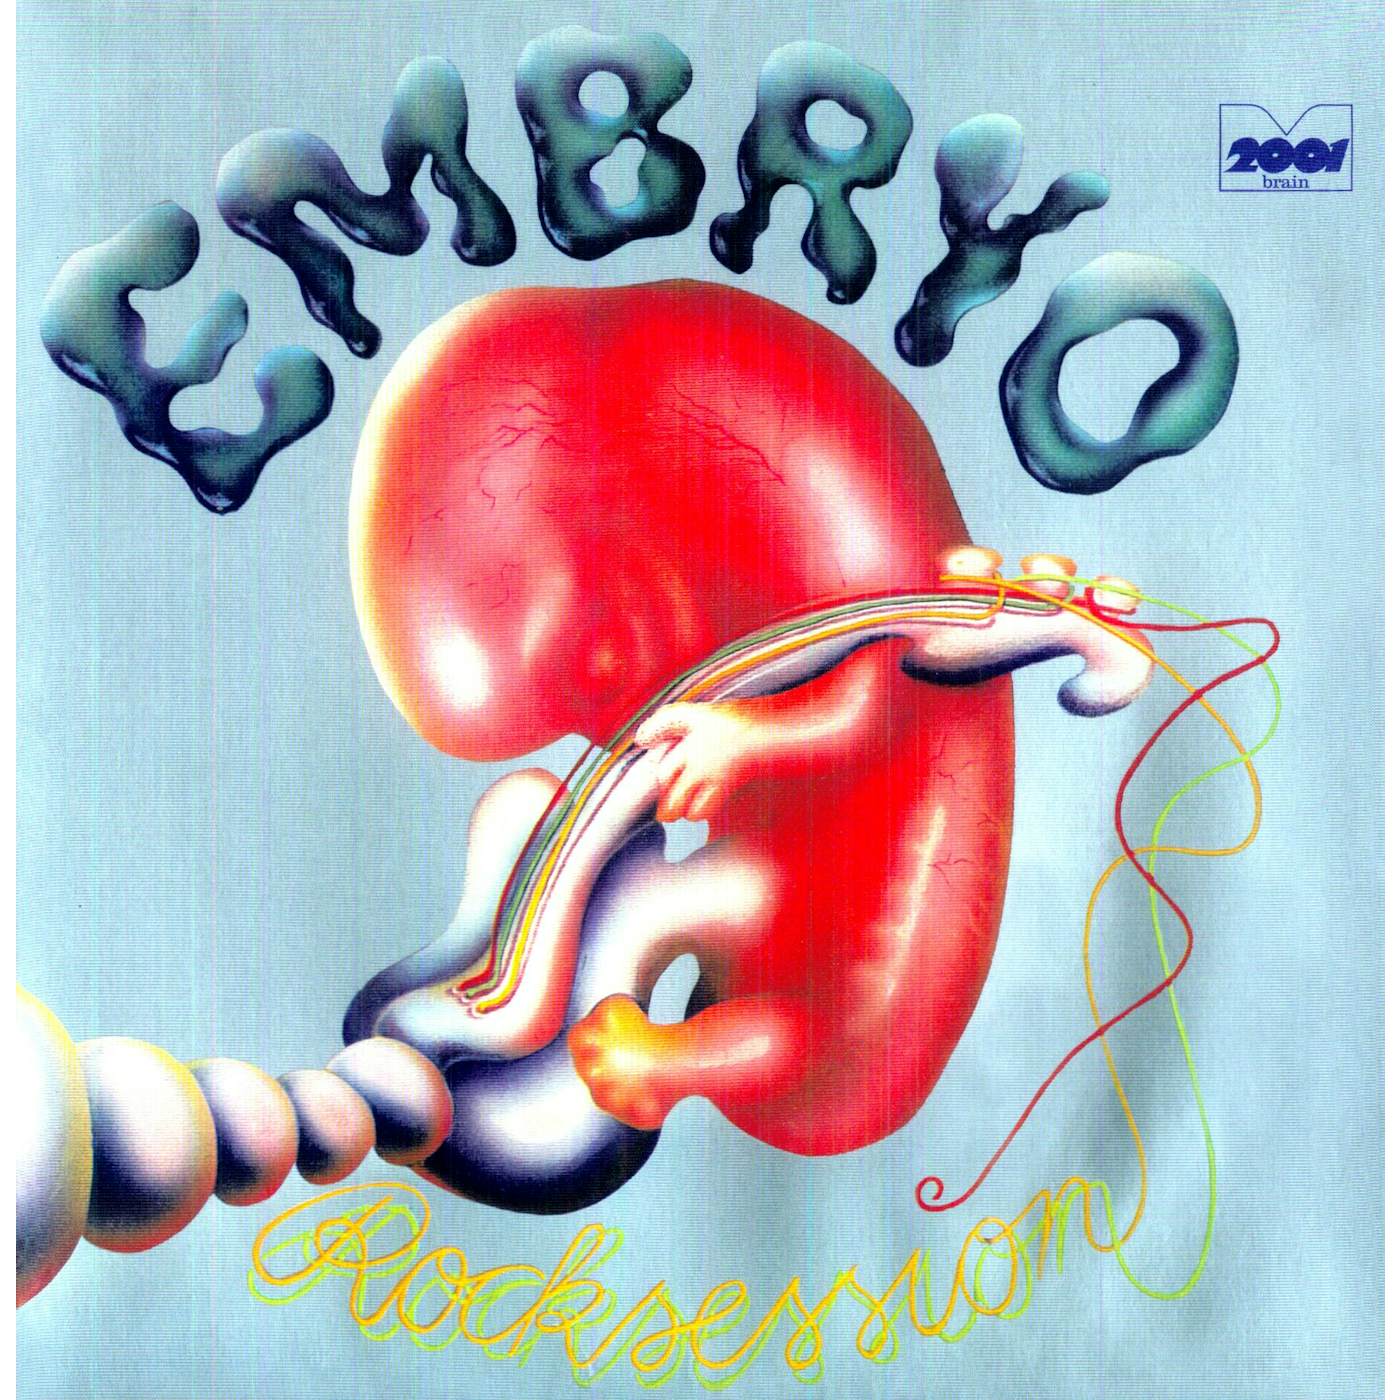 Embryo ROCKSESSION (Vinyl)